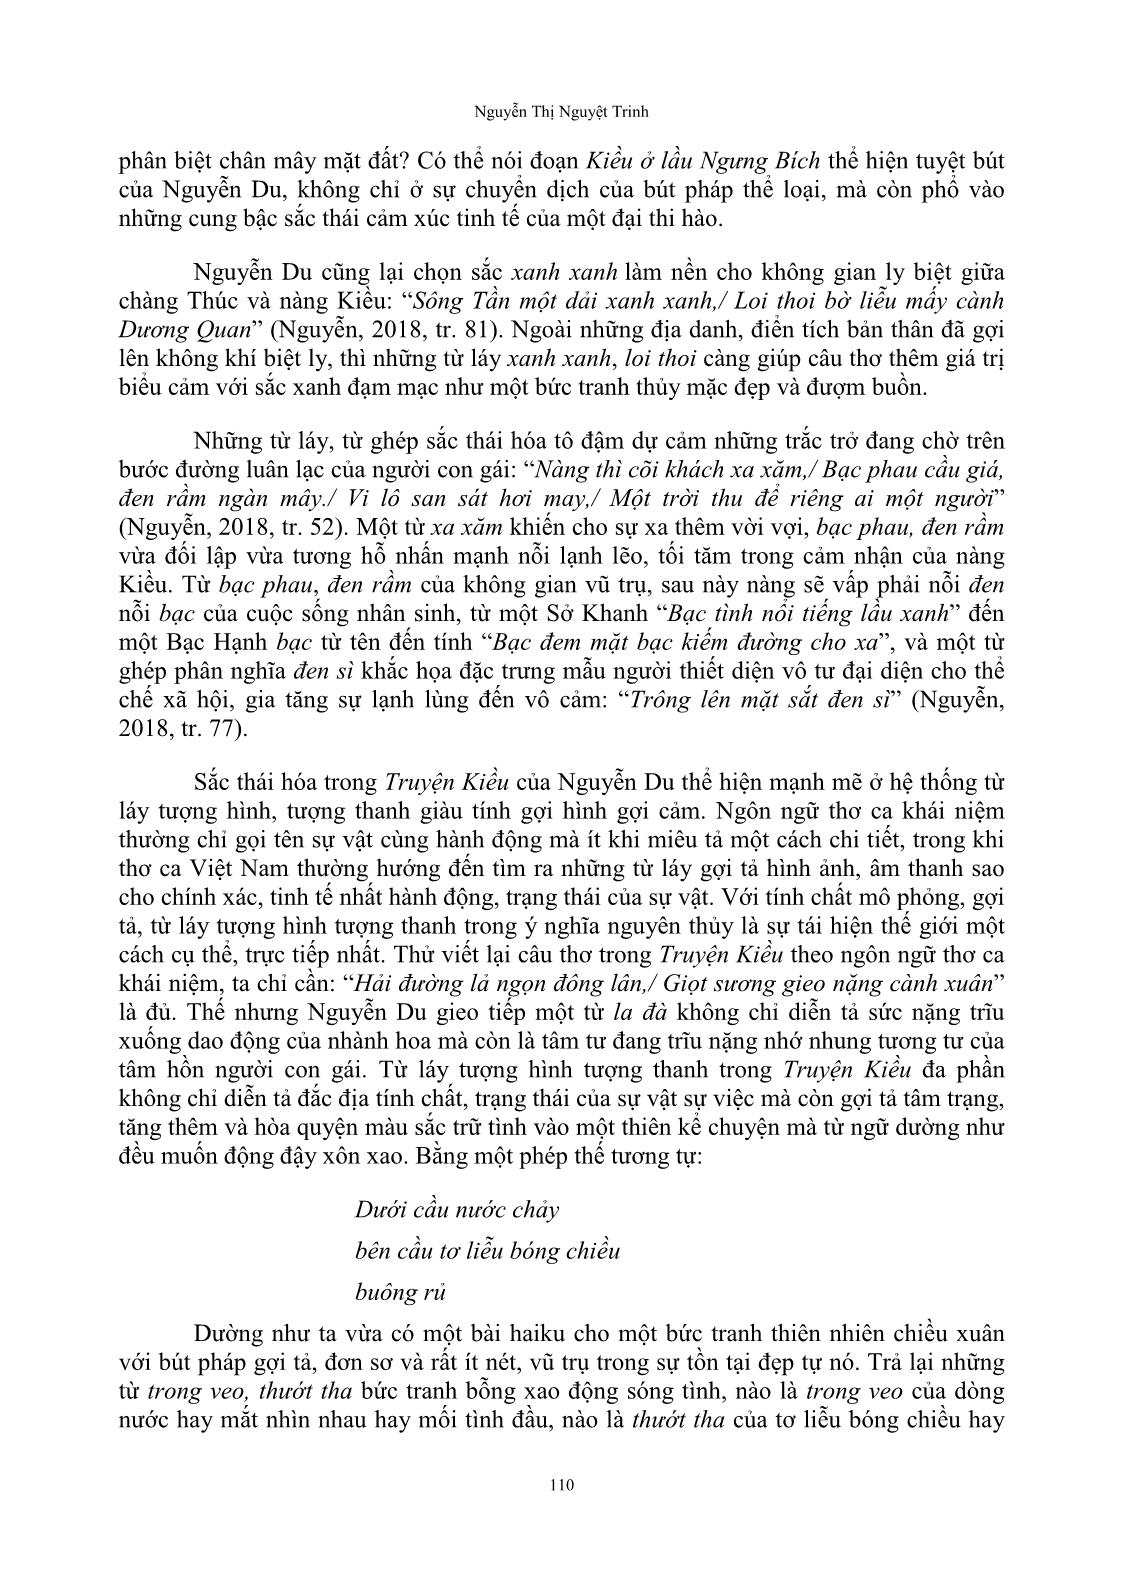 Sắc thái hóa ngôn ngữ thơ trong truyện Kiều của Nguyễn Du trang 7